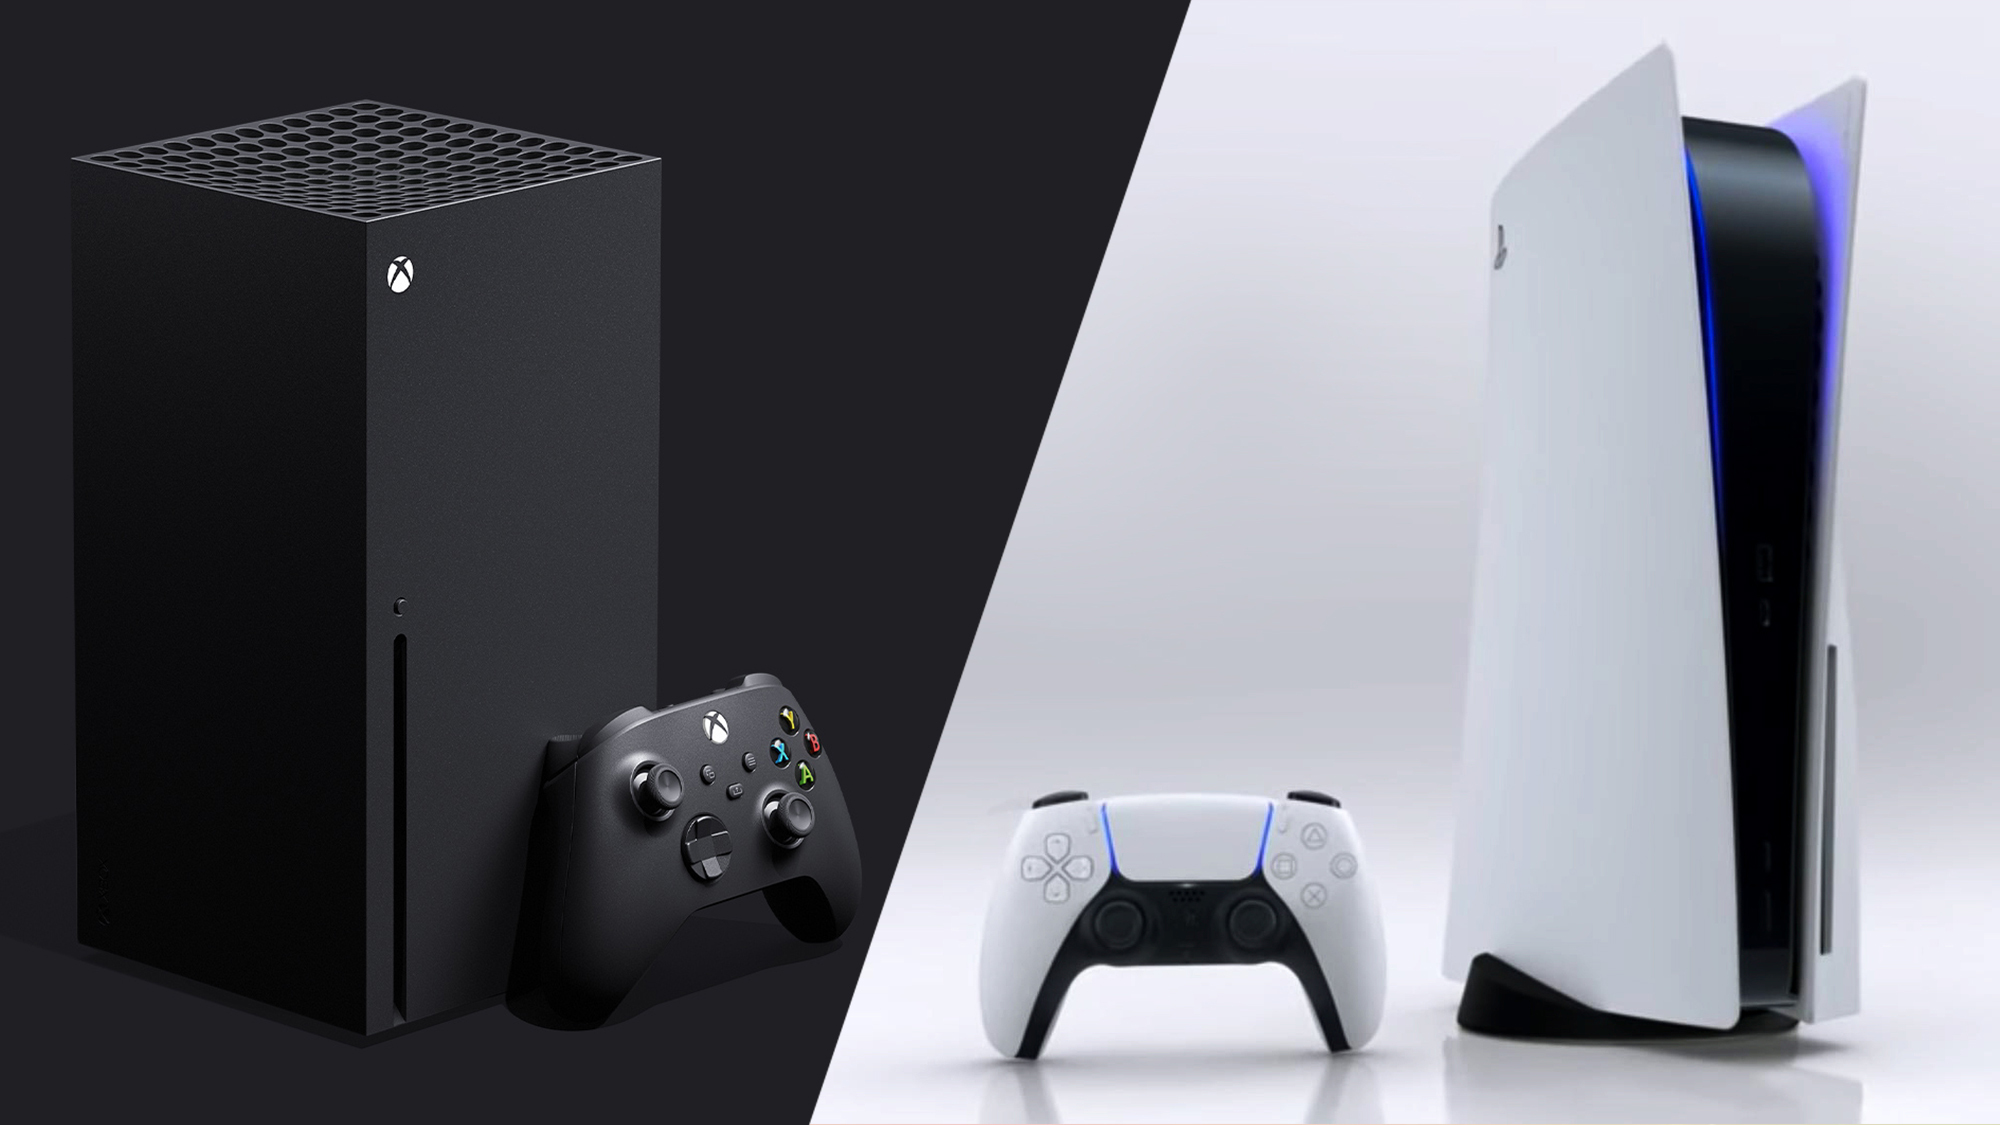 Zakladateľ spoločnosti Valve tvrdí, že konzola Xbox Series X je lepšou konzolou ako konzola PlayStation 5